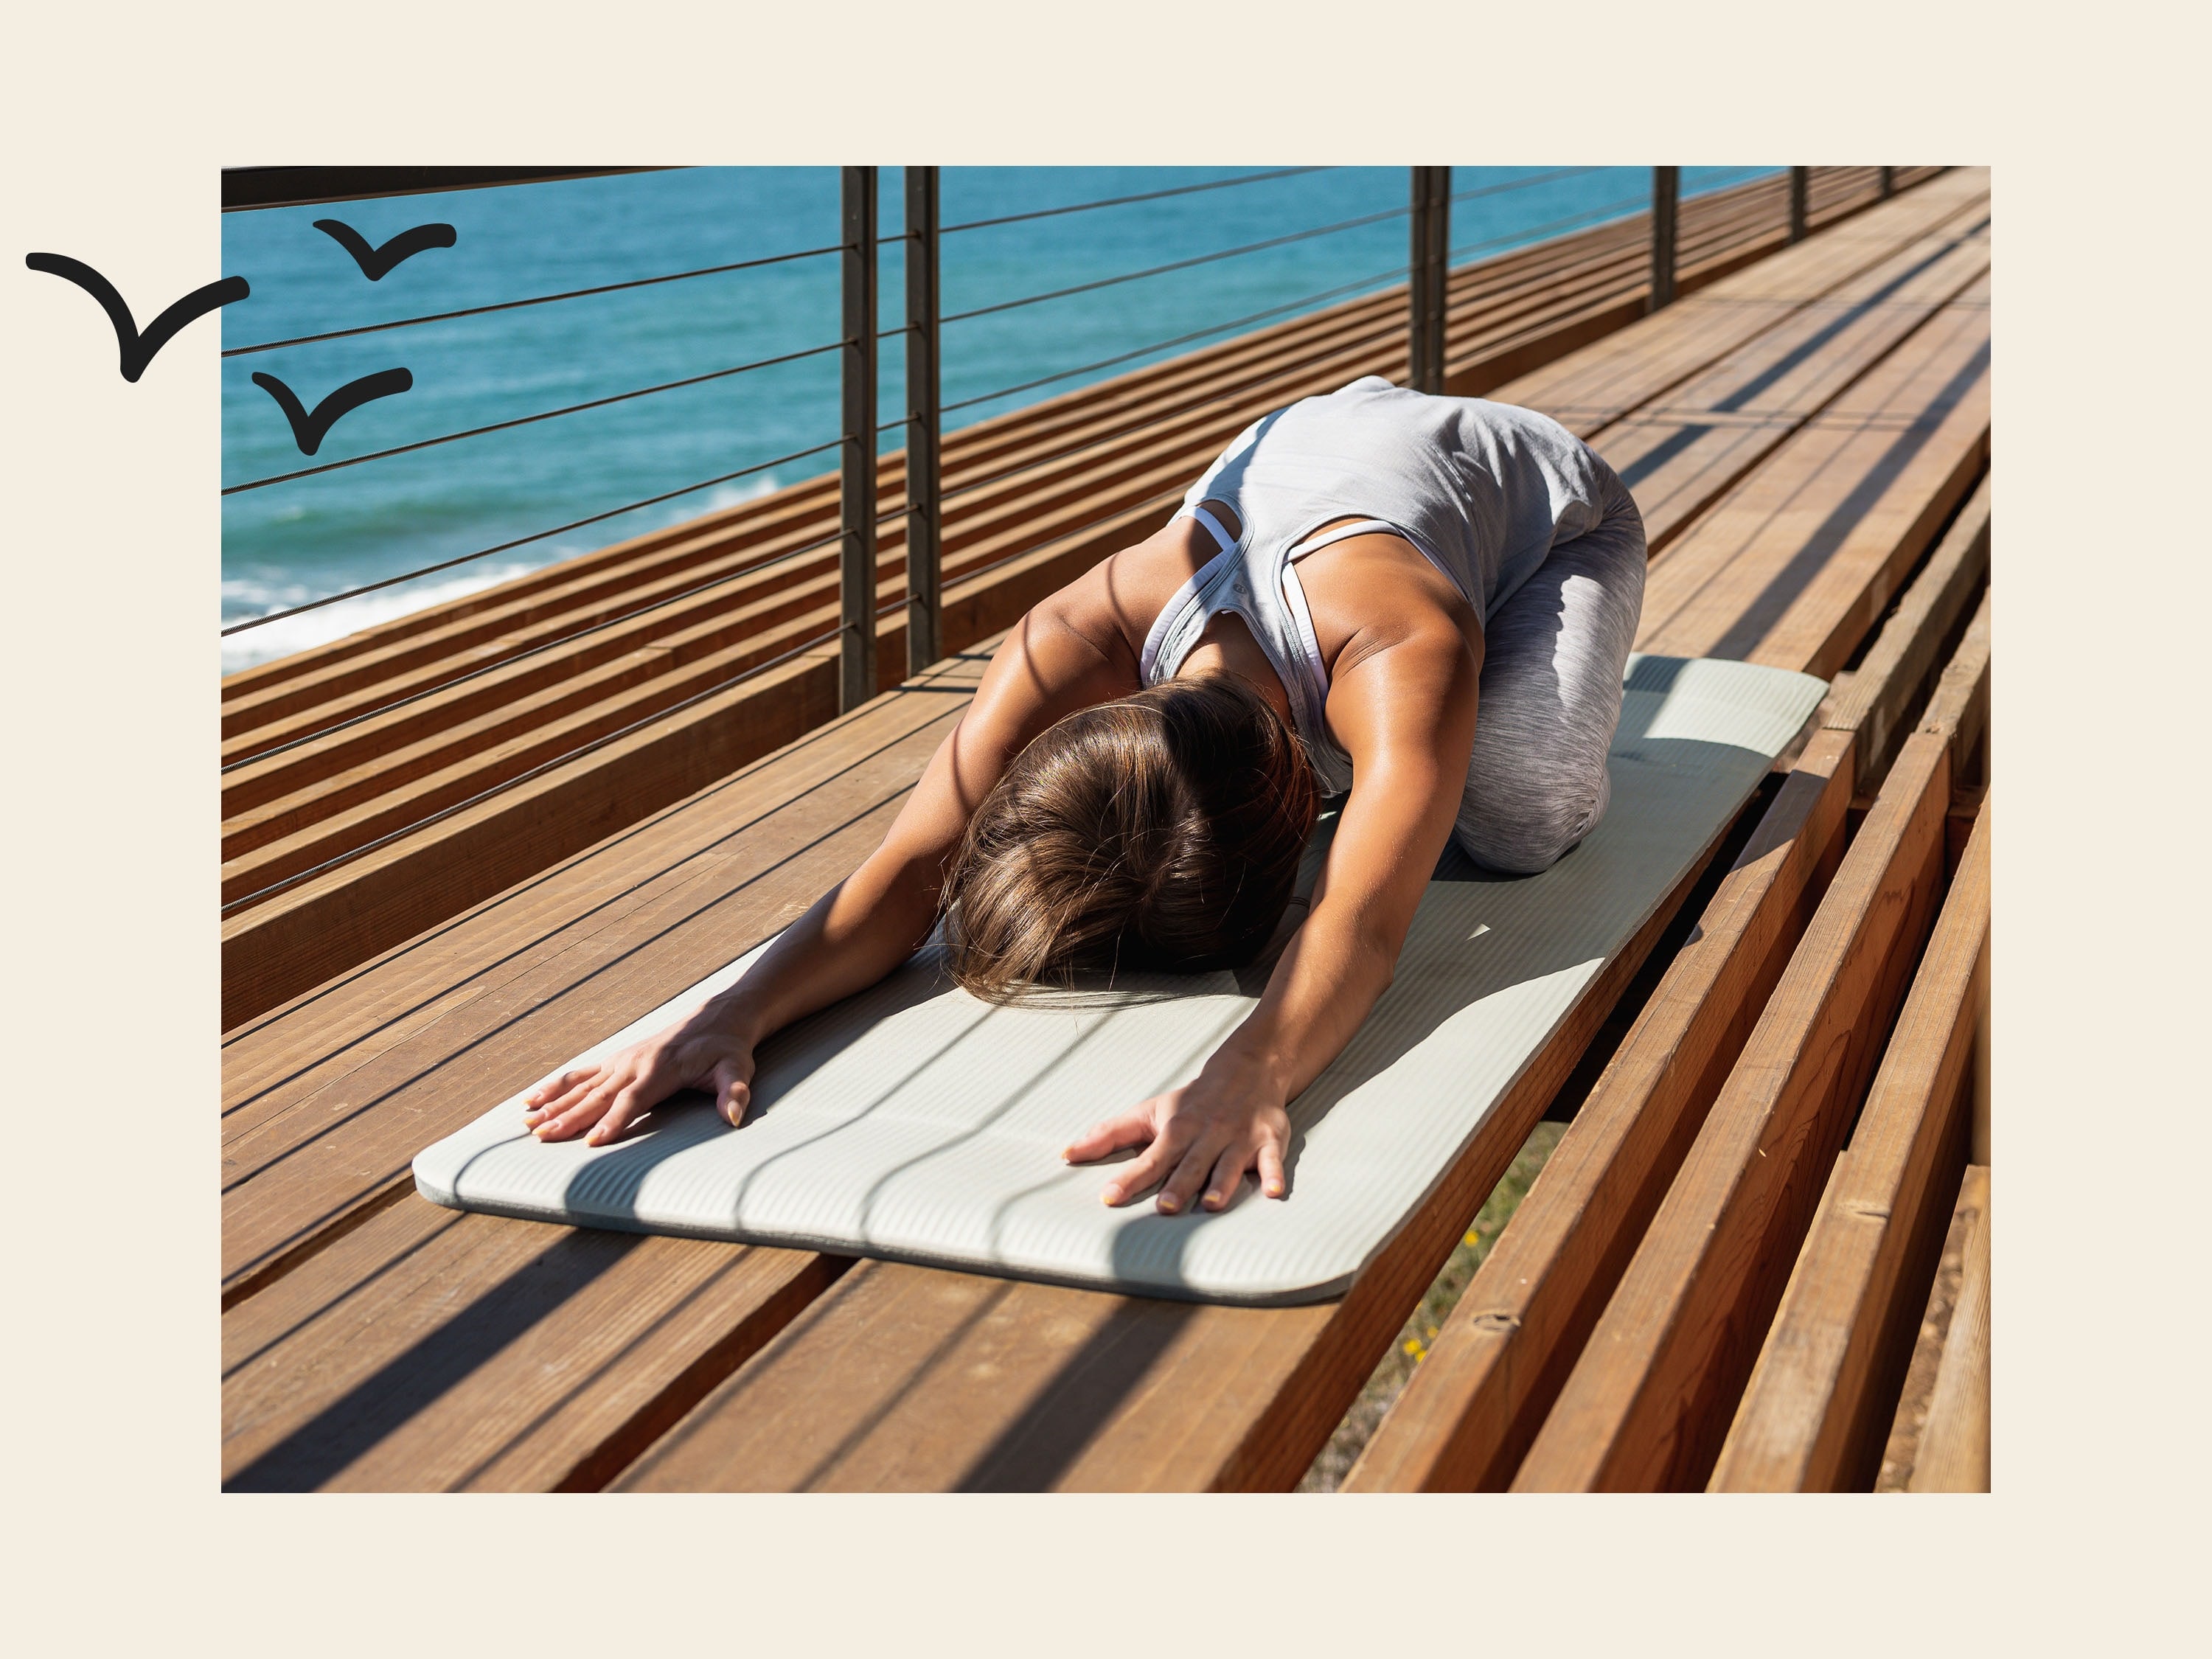 Solana .5/1 Yoga Mat - Rose / One Inch  Thick yoga mats, Mat exercises, Yoga  mat